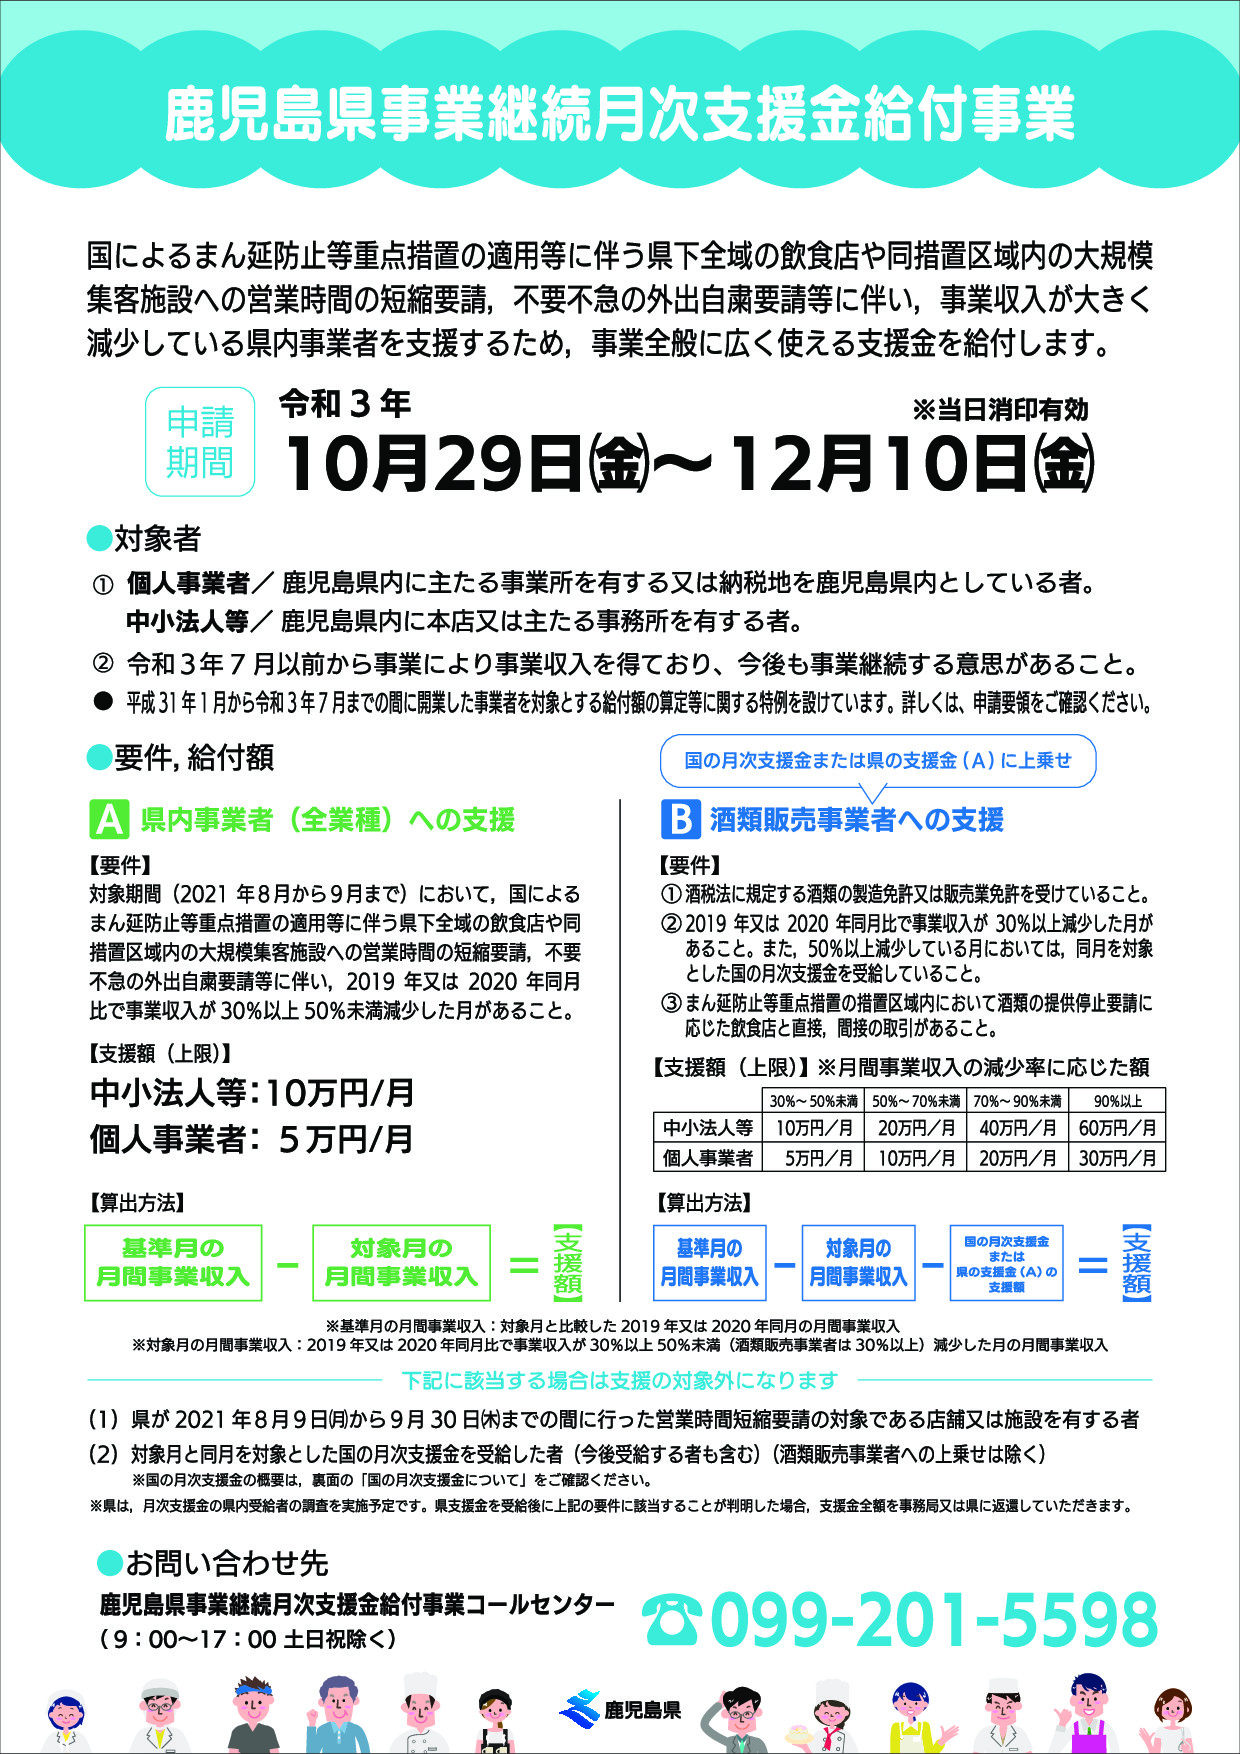 鹿児島県事業継続月次支援金給付事業(2021年10月29日（金曜日）から12月10日（金曜日）まで申請を受付)